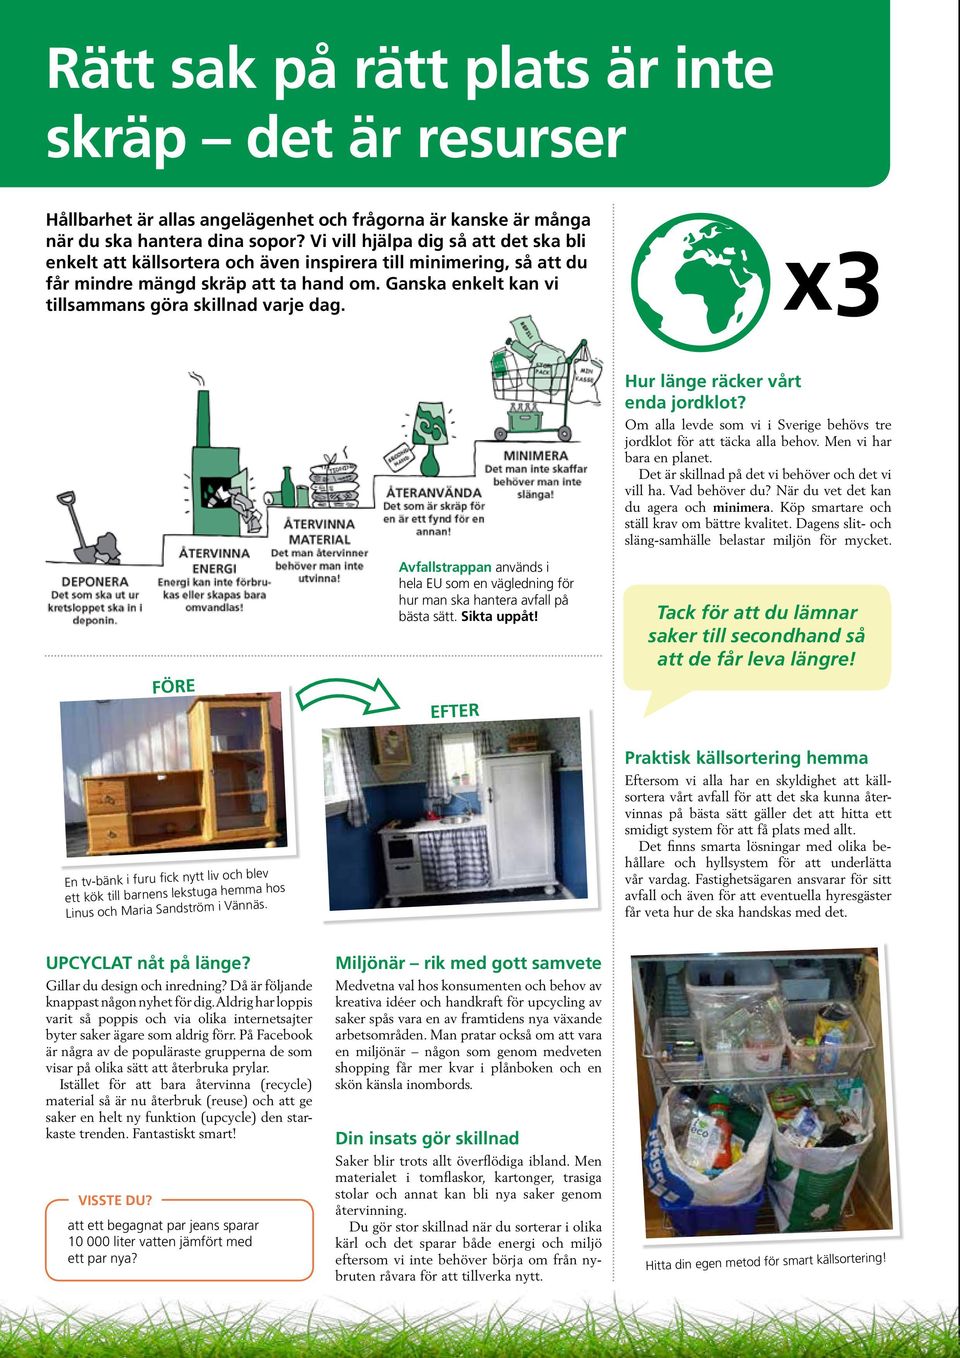 Ganska enkelt kan vi tillsammans göra skillnad varje dag. x3 FÖRE Avfallstrappan används i hela EU som en vägledning för hur man ska hantera avfall på bästa sätt. Sikta uppåt!